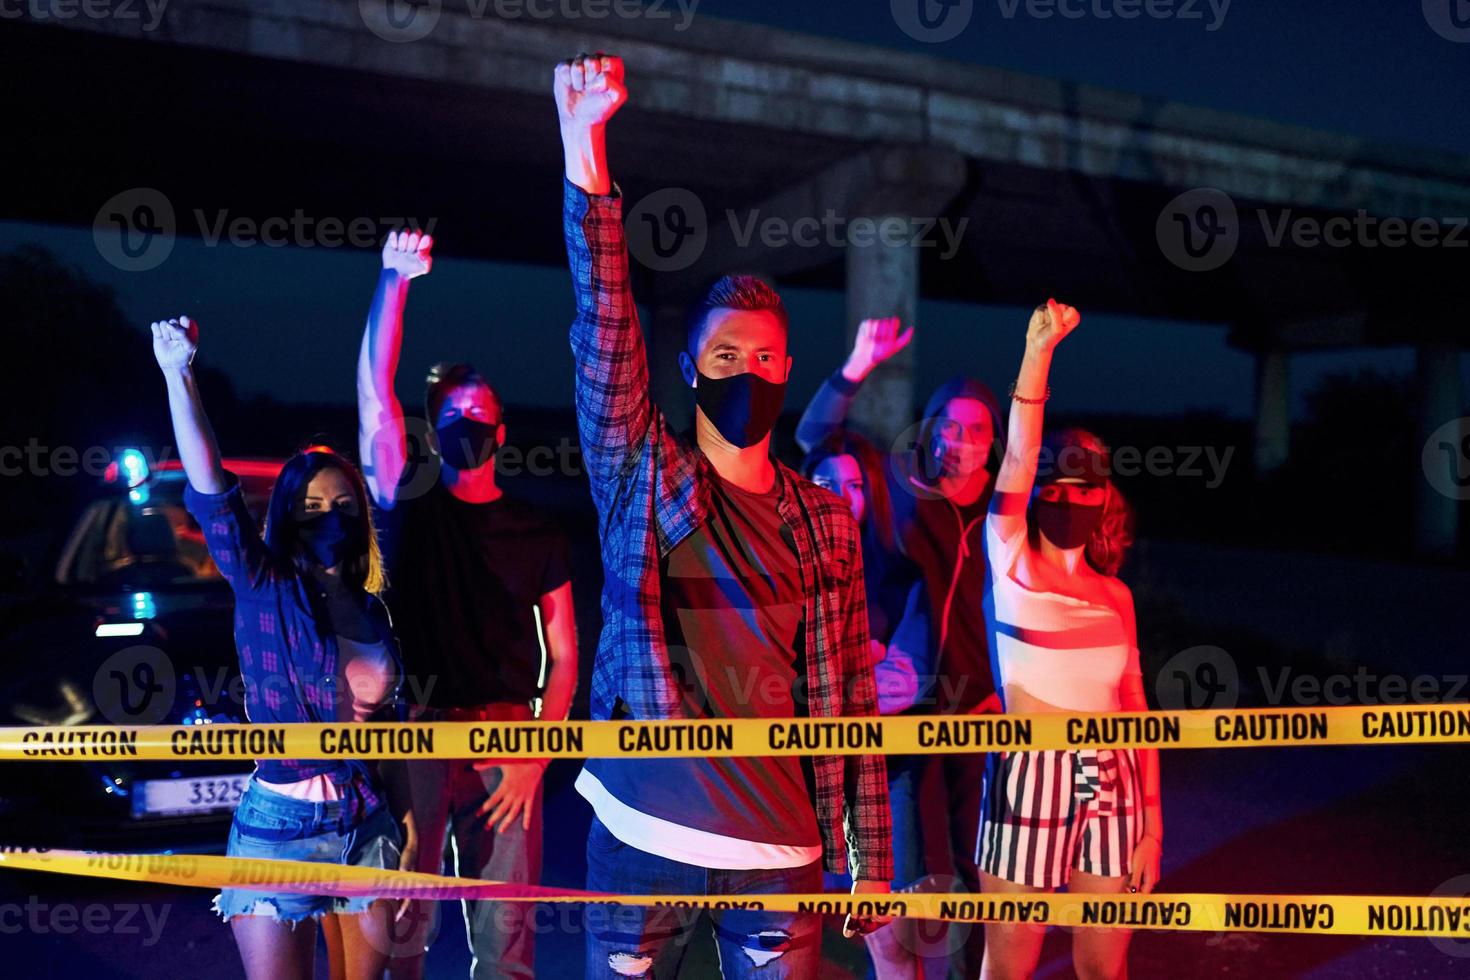 röd och blå polis belysning. grupp av protesterar ung människor den där stående tillsammans. aktivist för mänsklig rättigheter eller mot regering foto